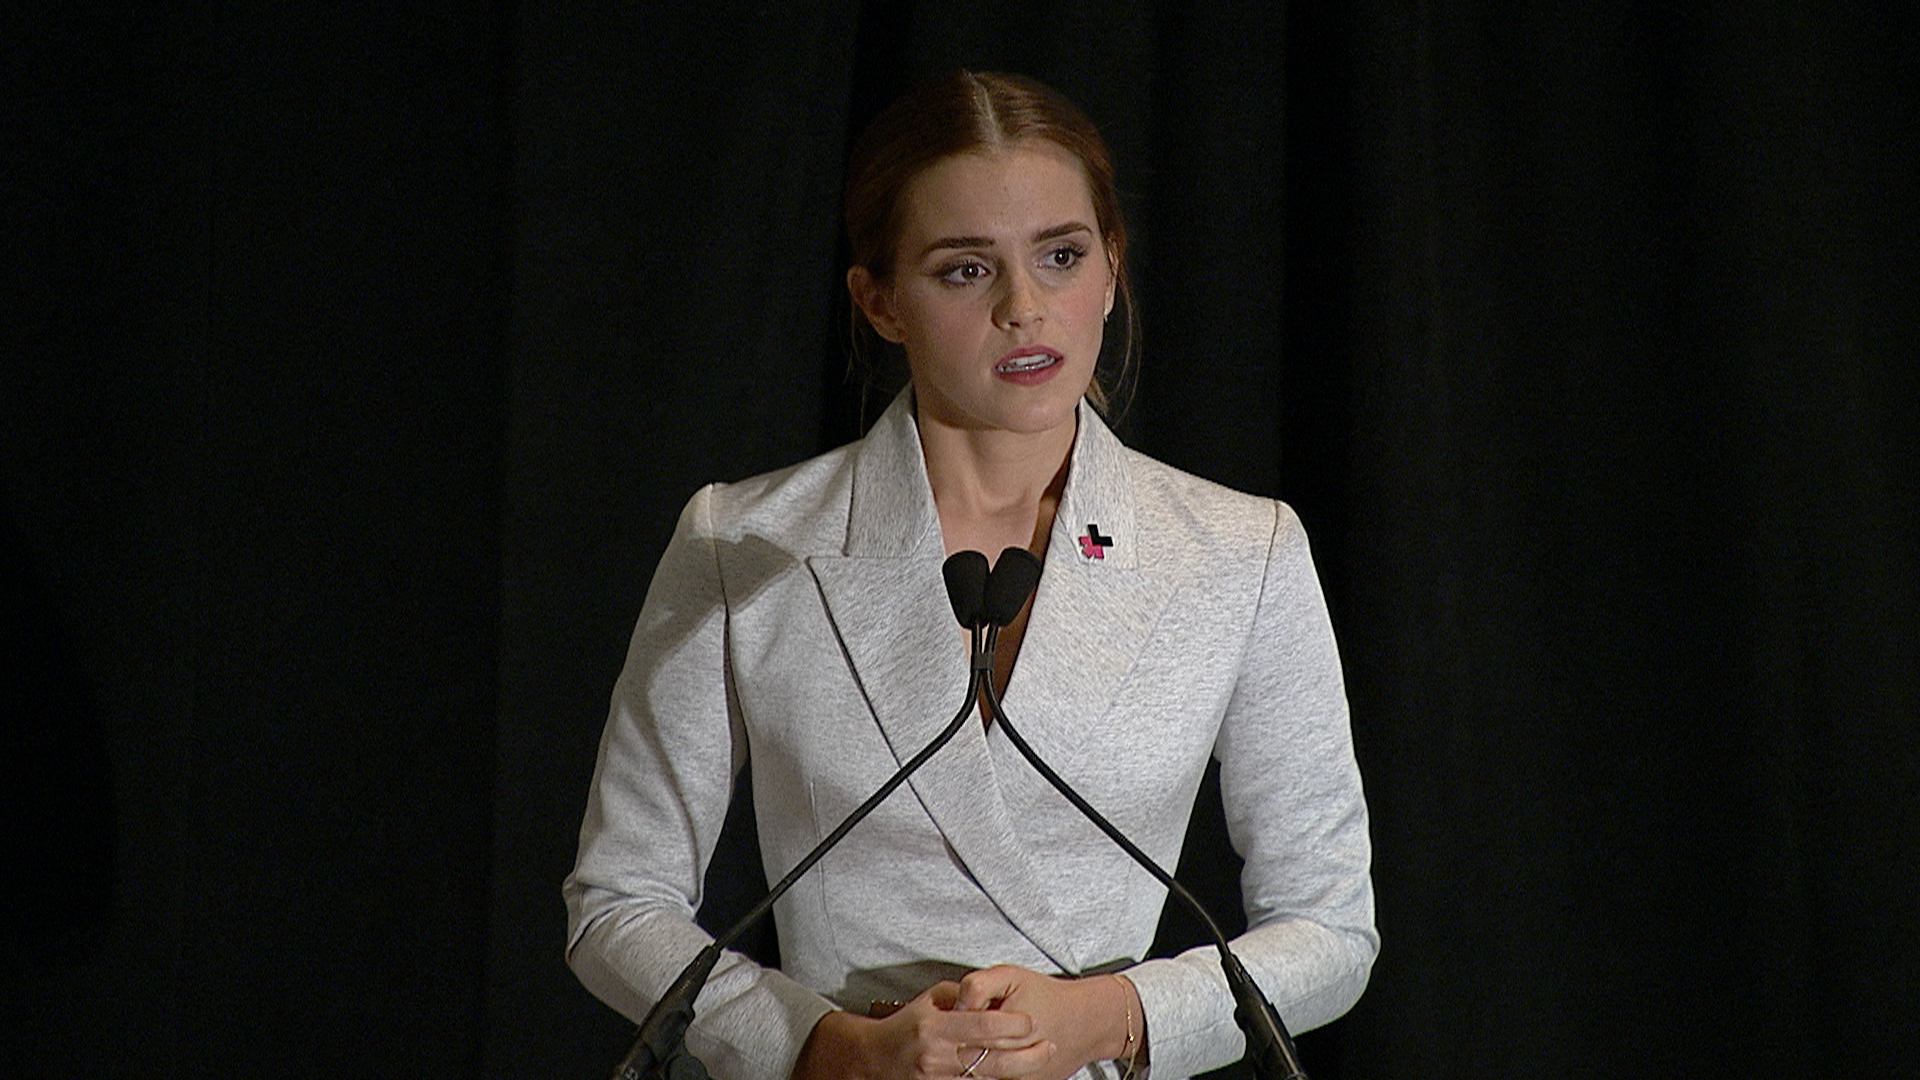 stål interval Måned Emma Watson to men: Fight for gender equality